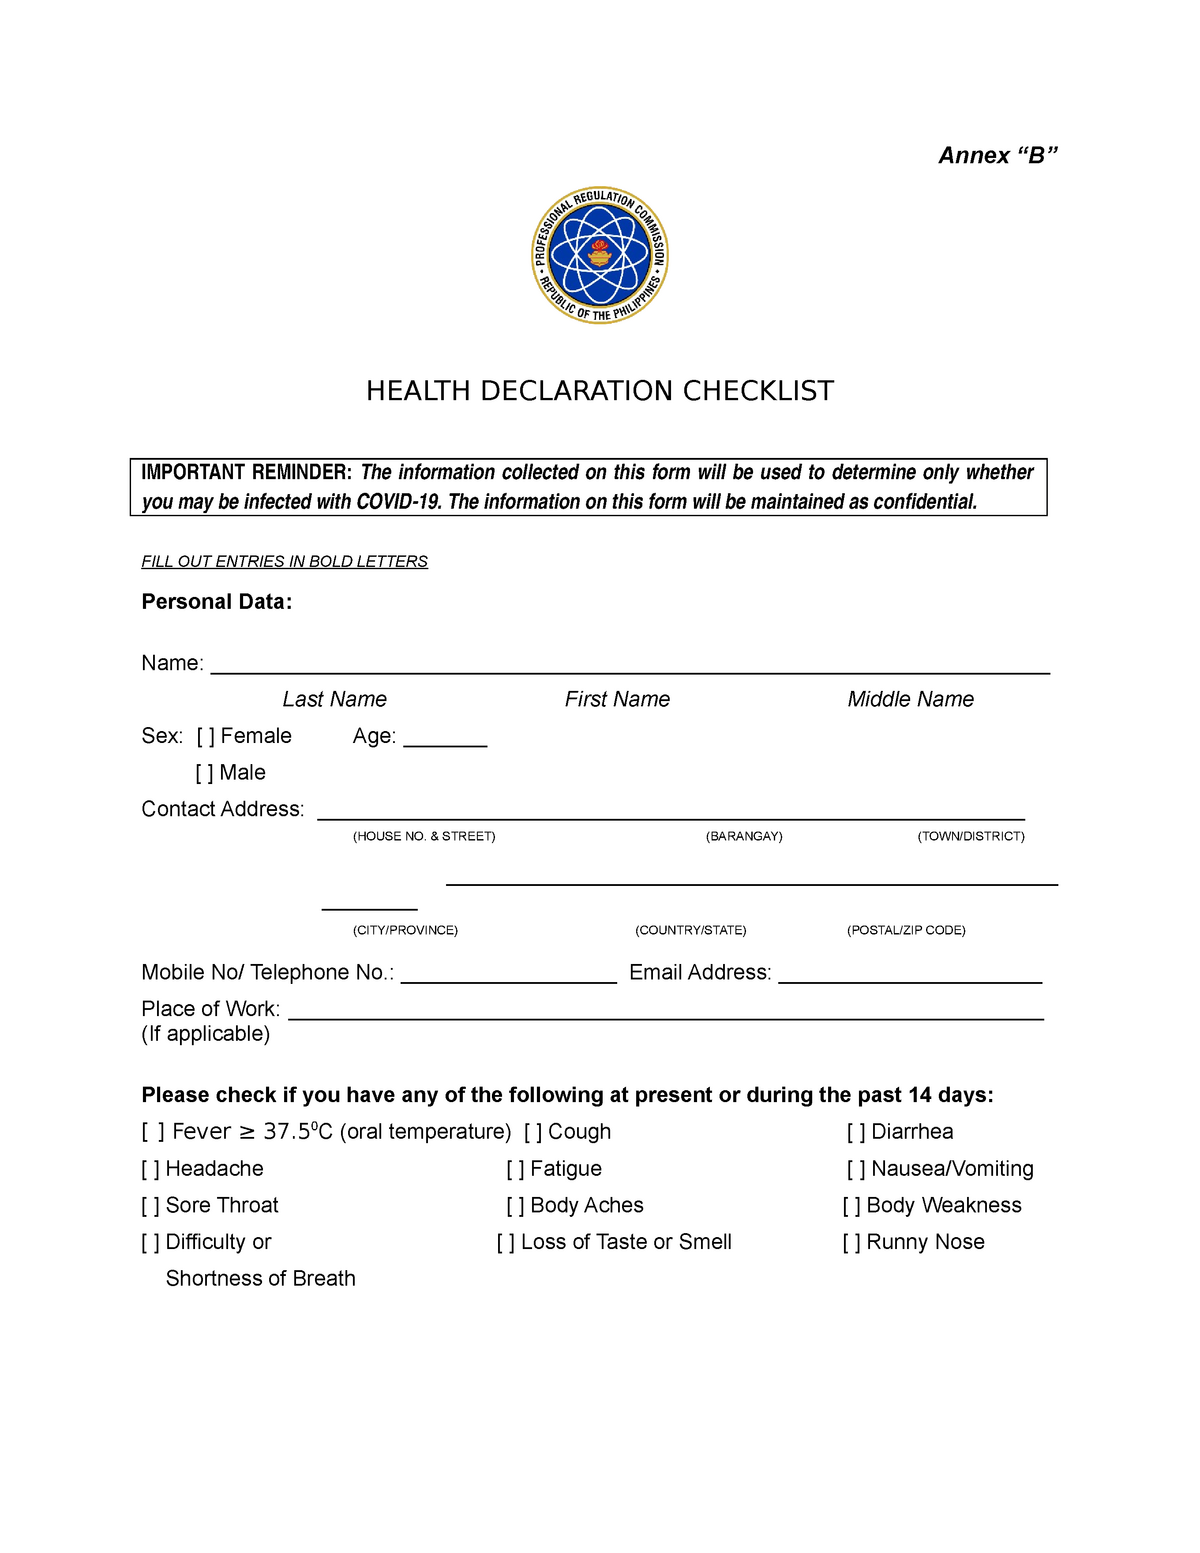 2020 68 Annex B Health Declaration Form110320 Annex “b” Health Declaration Checklist 8697